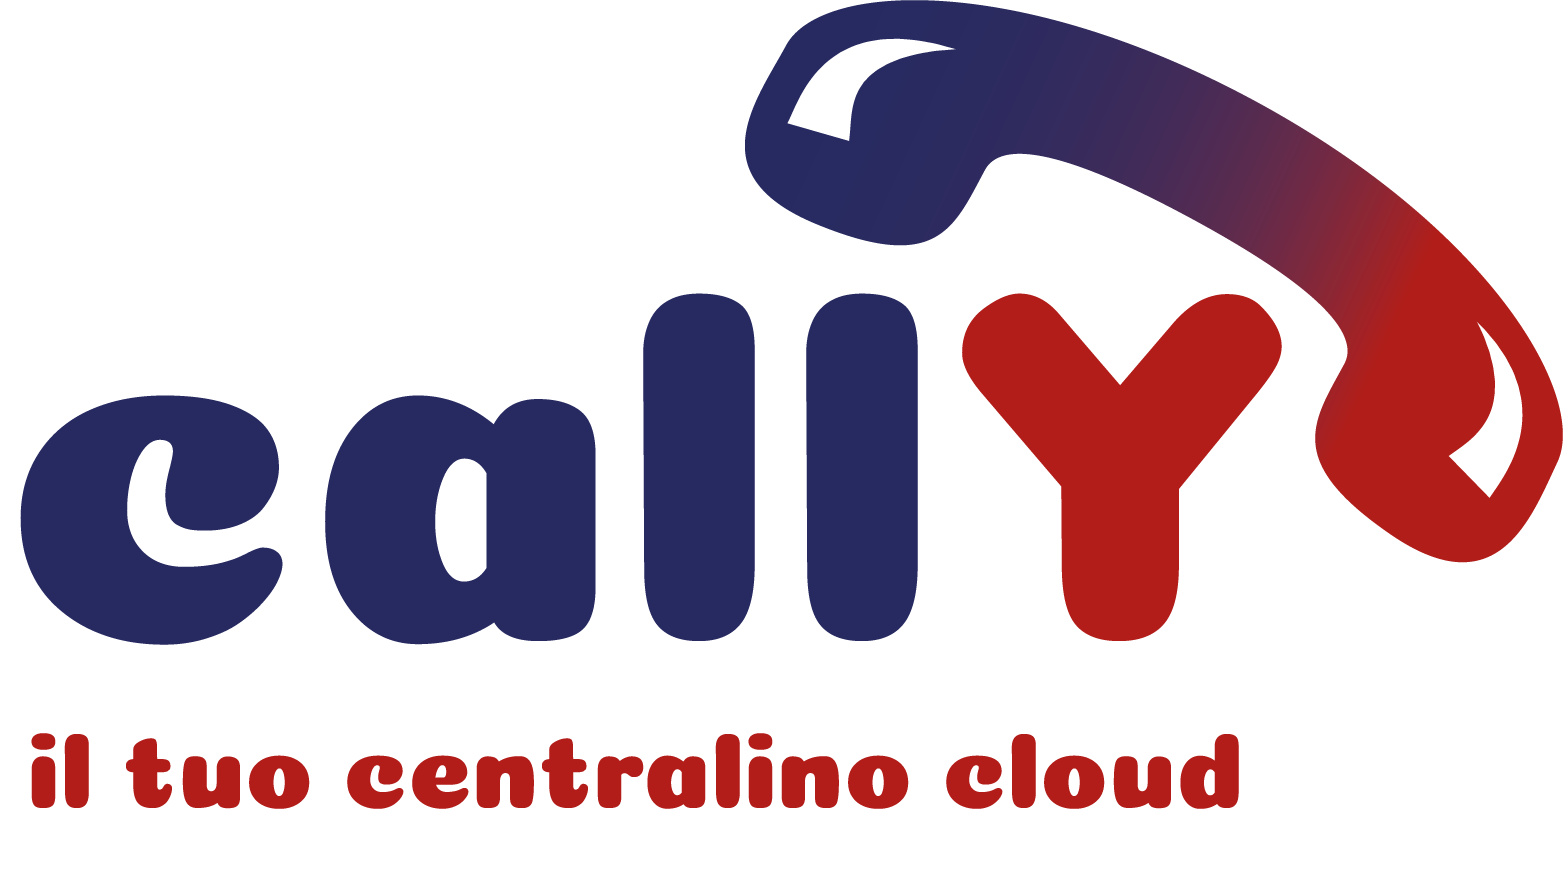 callY: centralino cloud